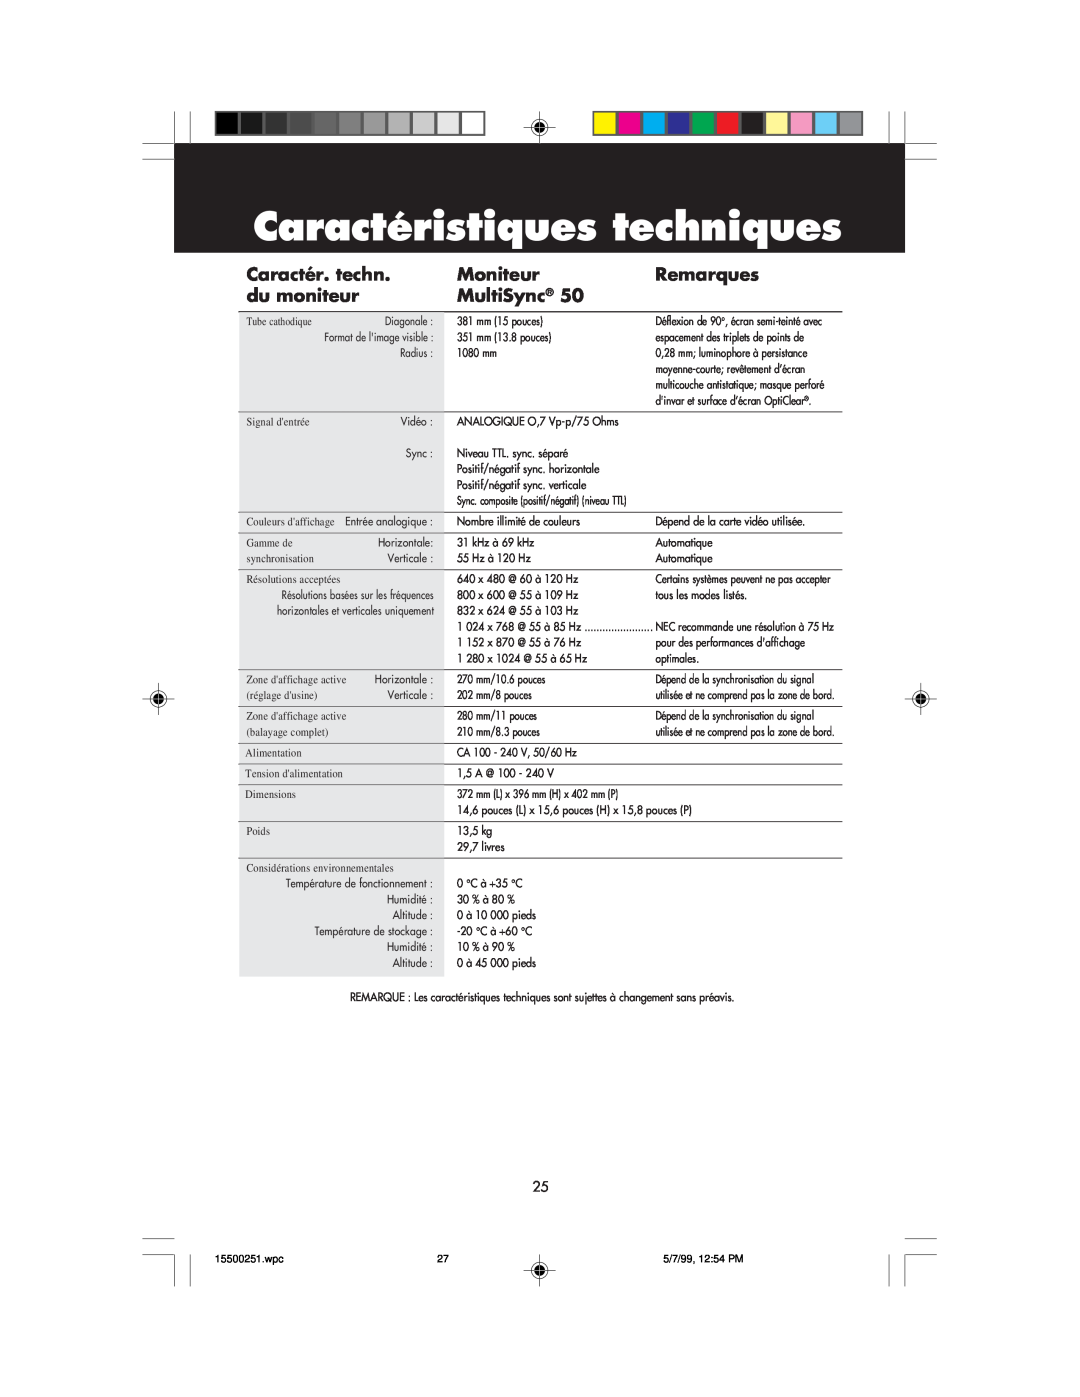 NEC MultiSync 50, 90 user manual Caractéristiques techniques, Caractér. techn, Moniteur, Remarques, du moniteur 